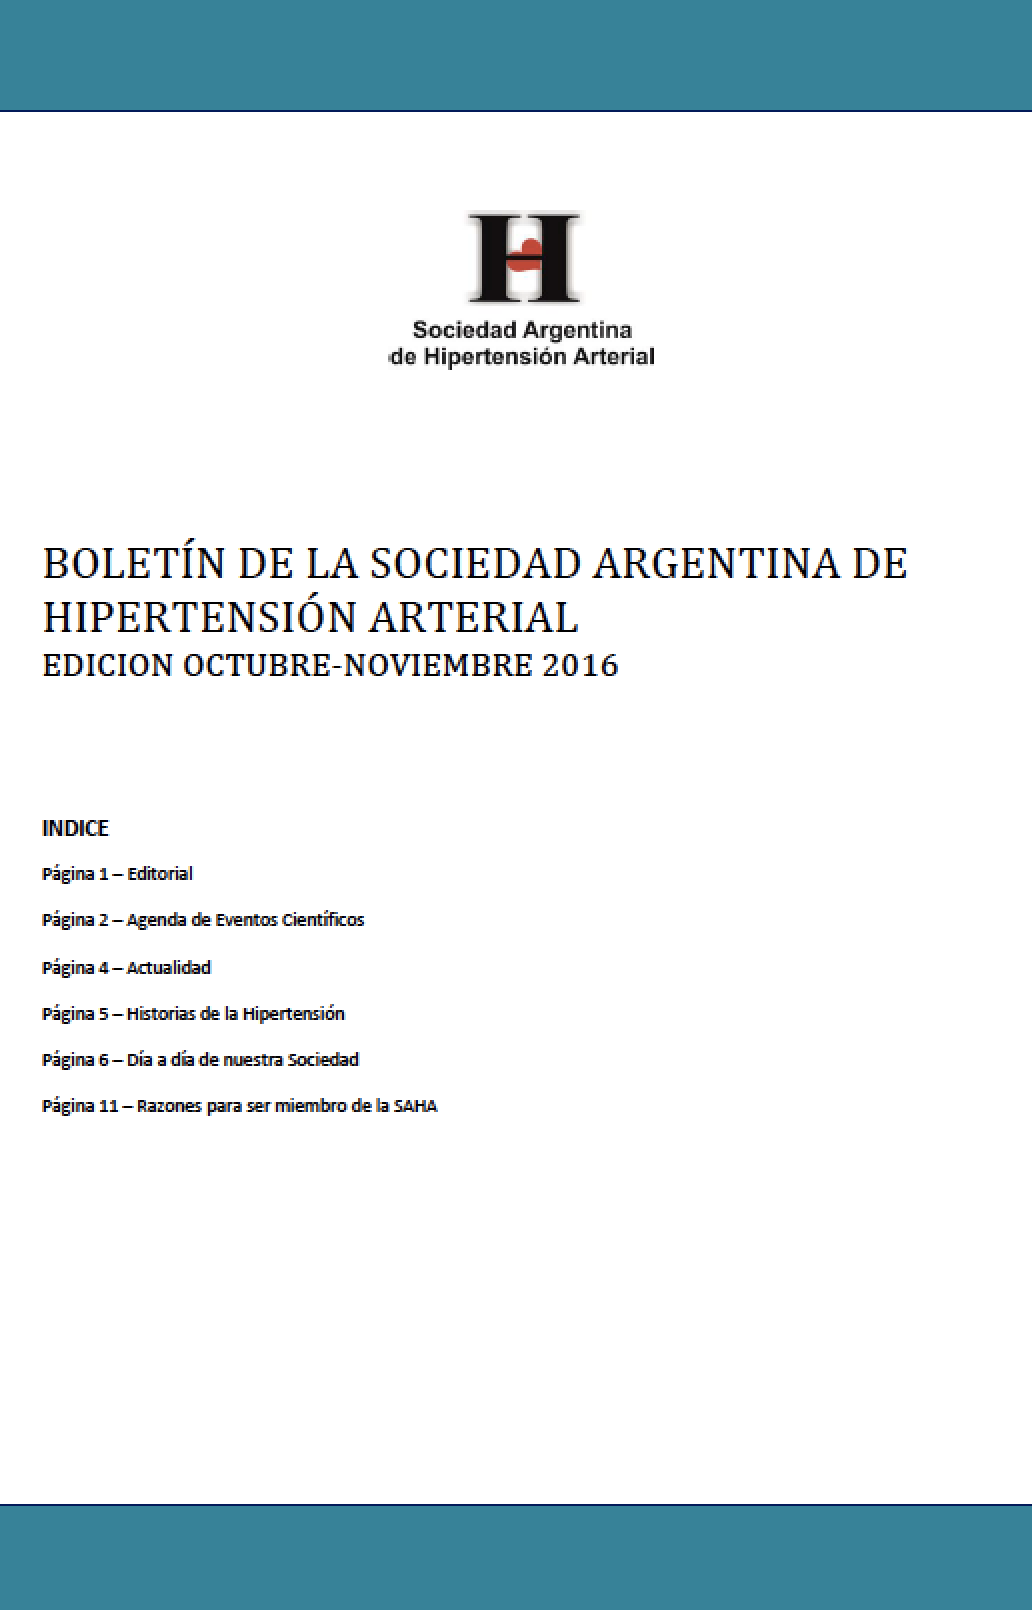 Boletín Periódico Sociedad Argentina de Hipertensión Arterial Octubre - Noviembre 2016